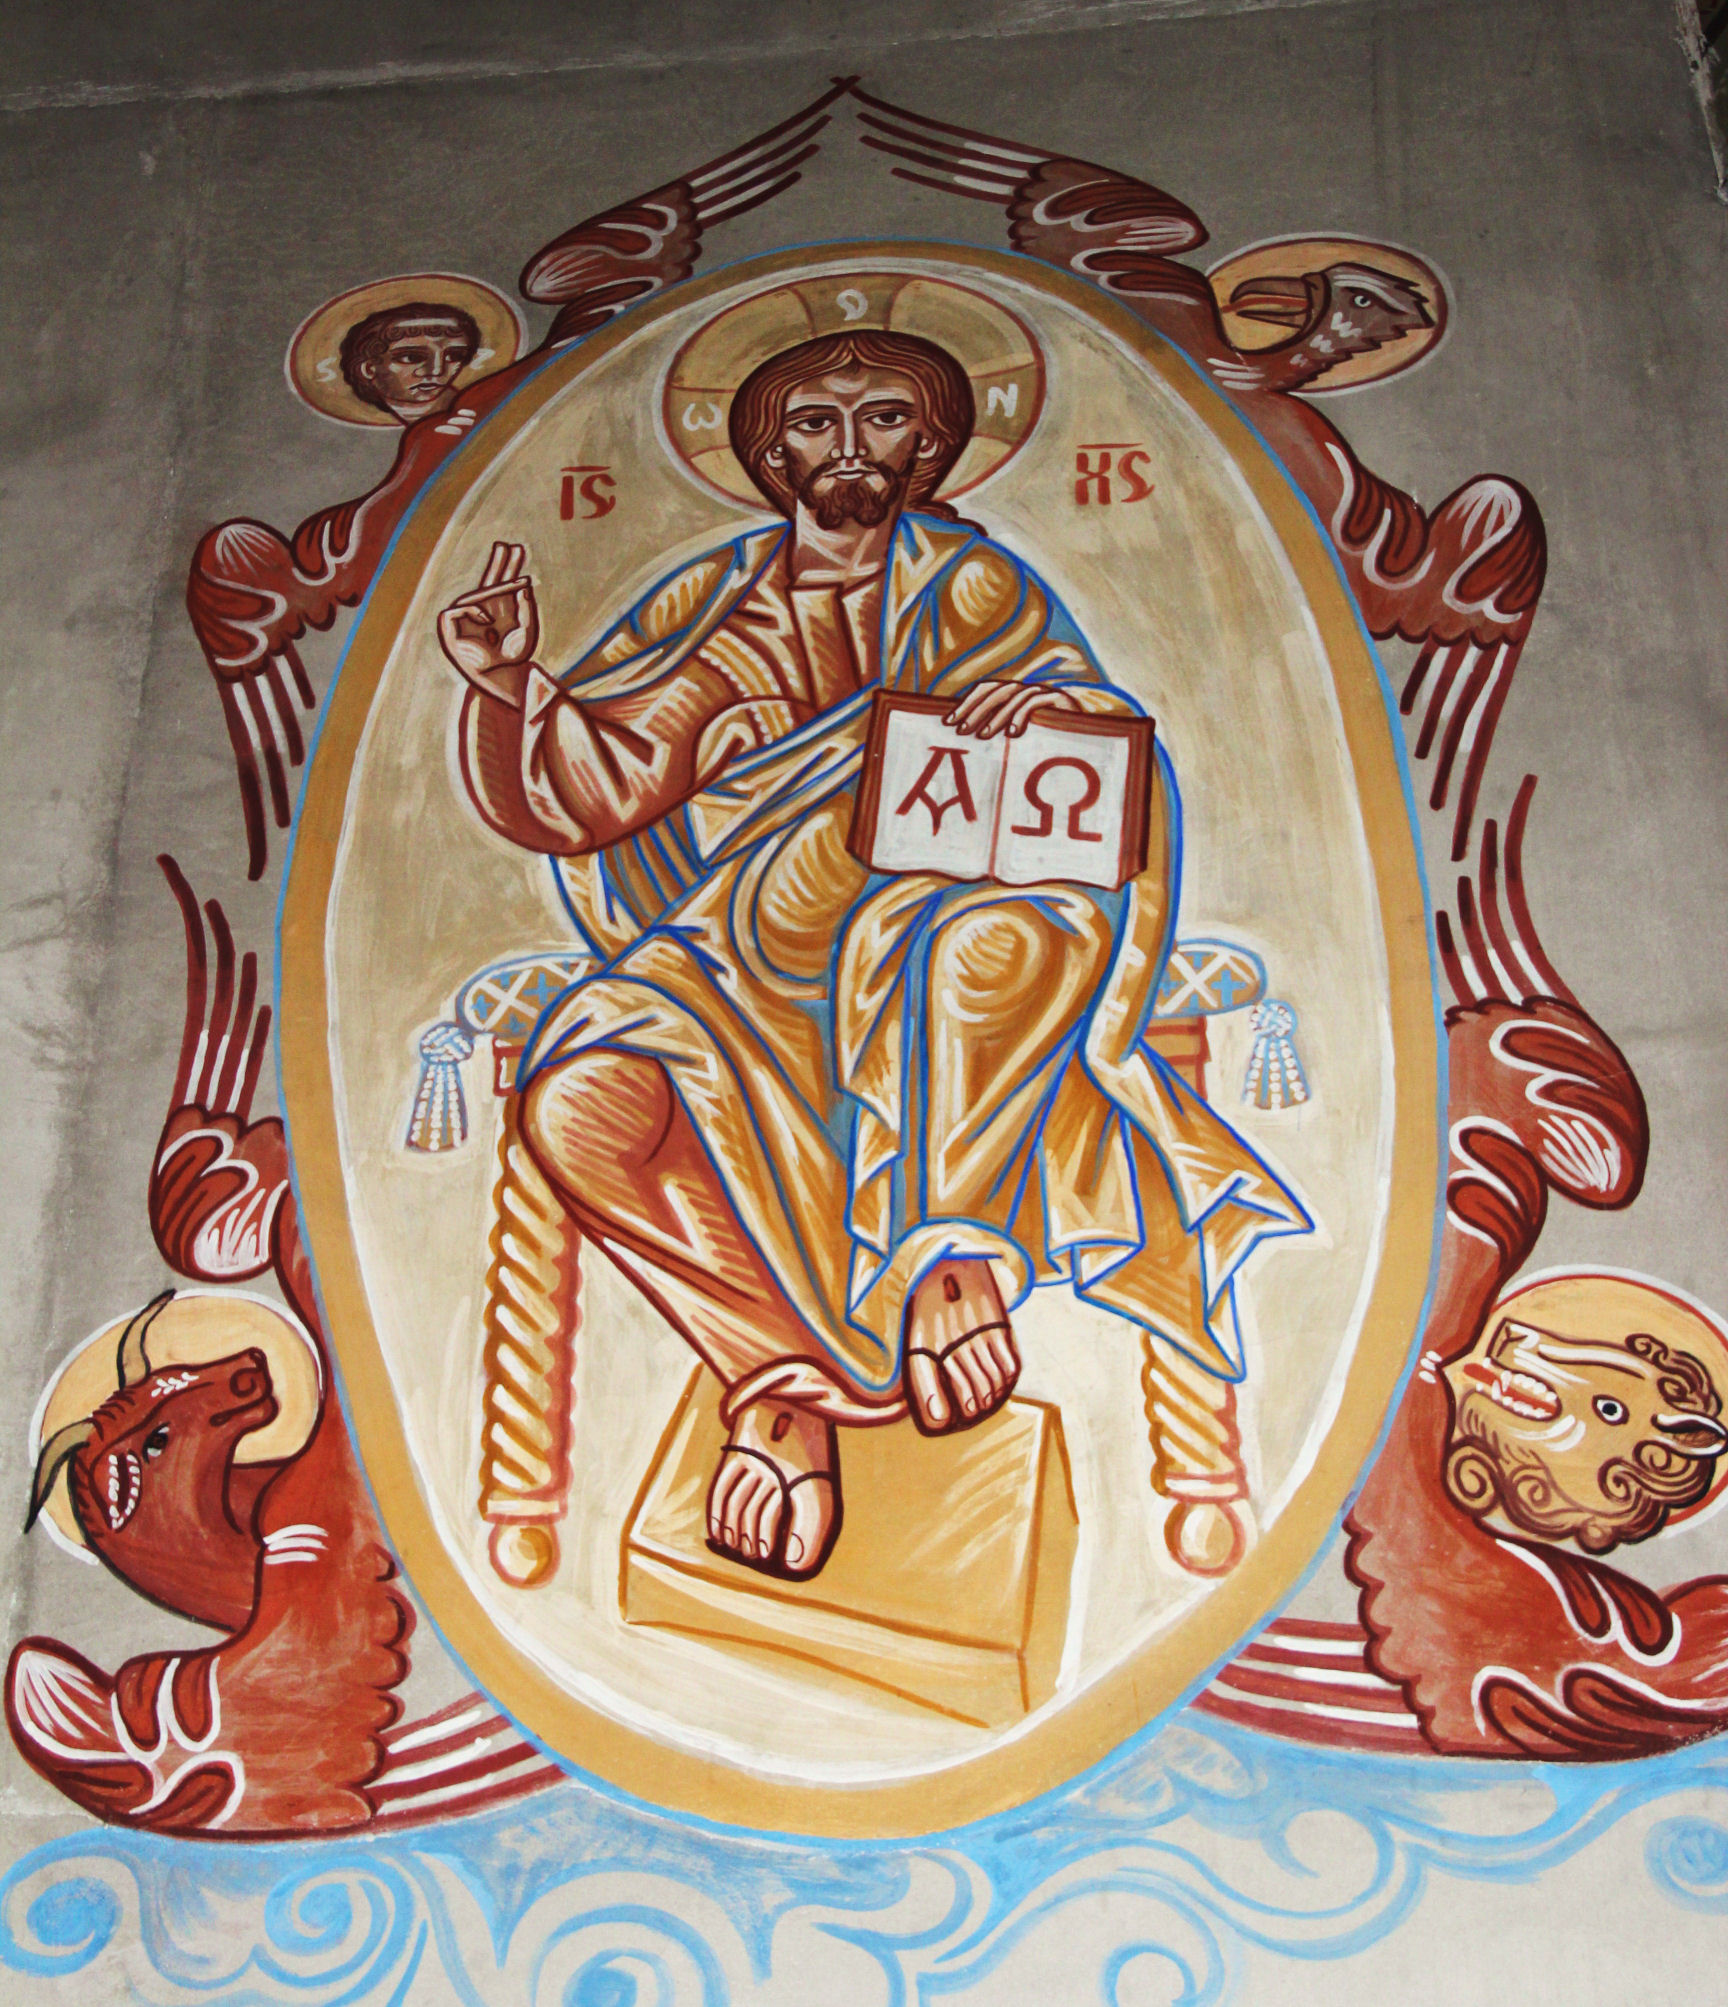 Fresque du Christ engloire